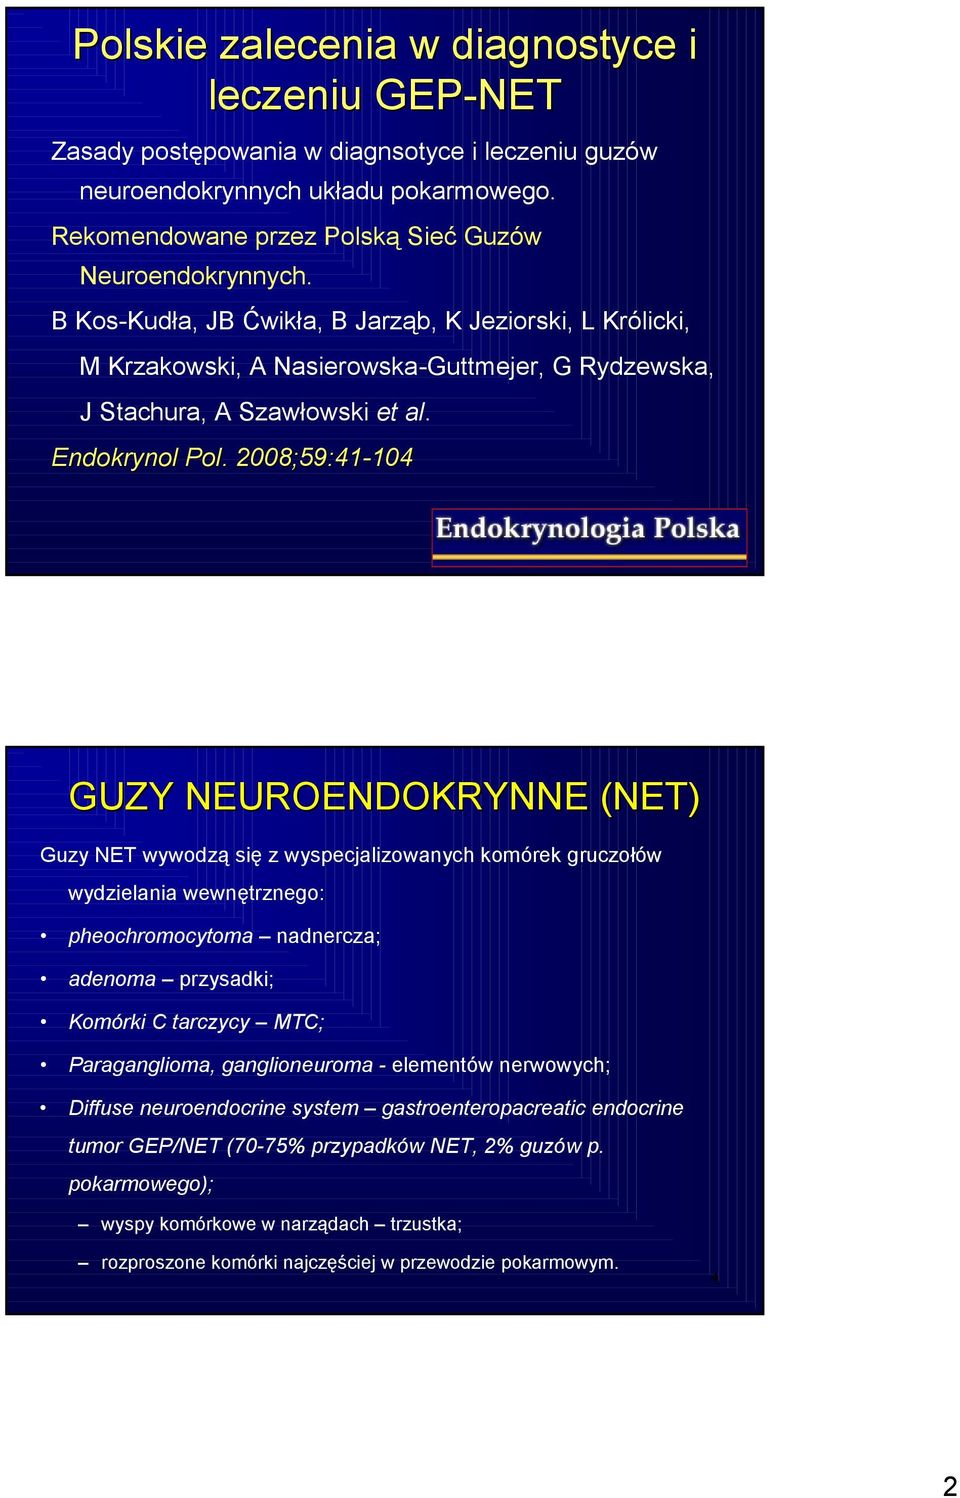 . 2008; 8;59:41-104104 3 GUZY NEUROENDOKRYNNE (NET) Guzy NET wywodzą się z wyspecjalizowanych komórek gruczołów wydzielania wewnętrznego: pheochromocytoma nadnercza; adenoma przysadki; Komórki C